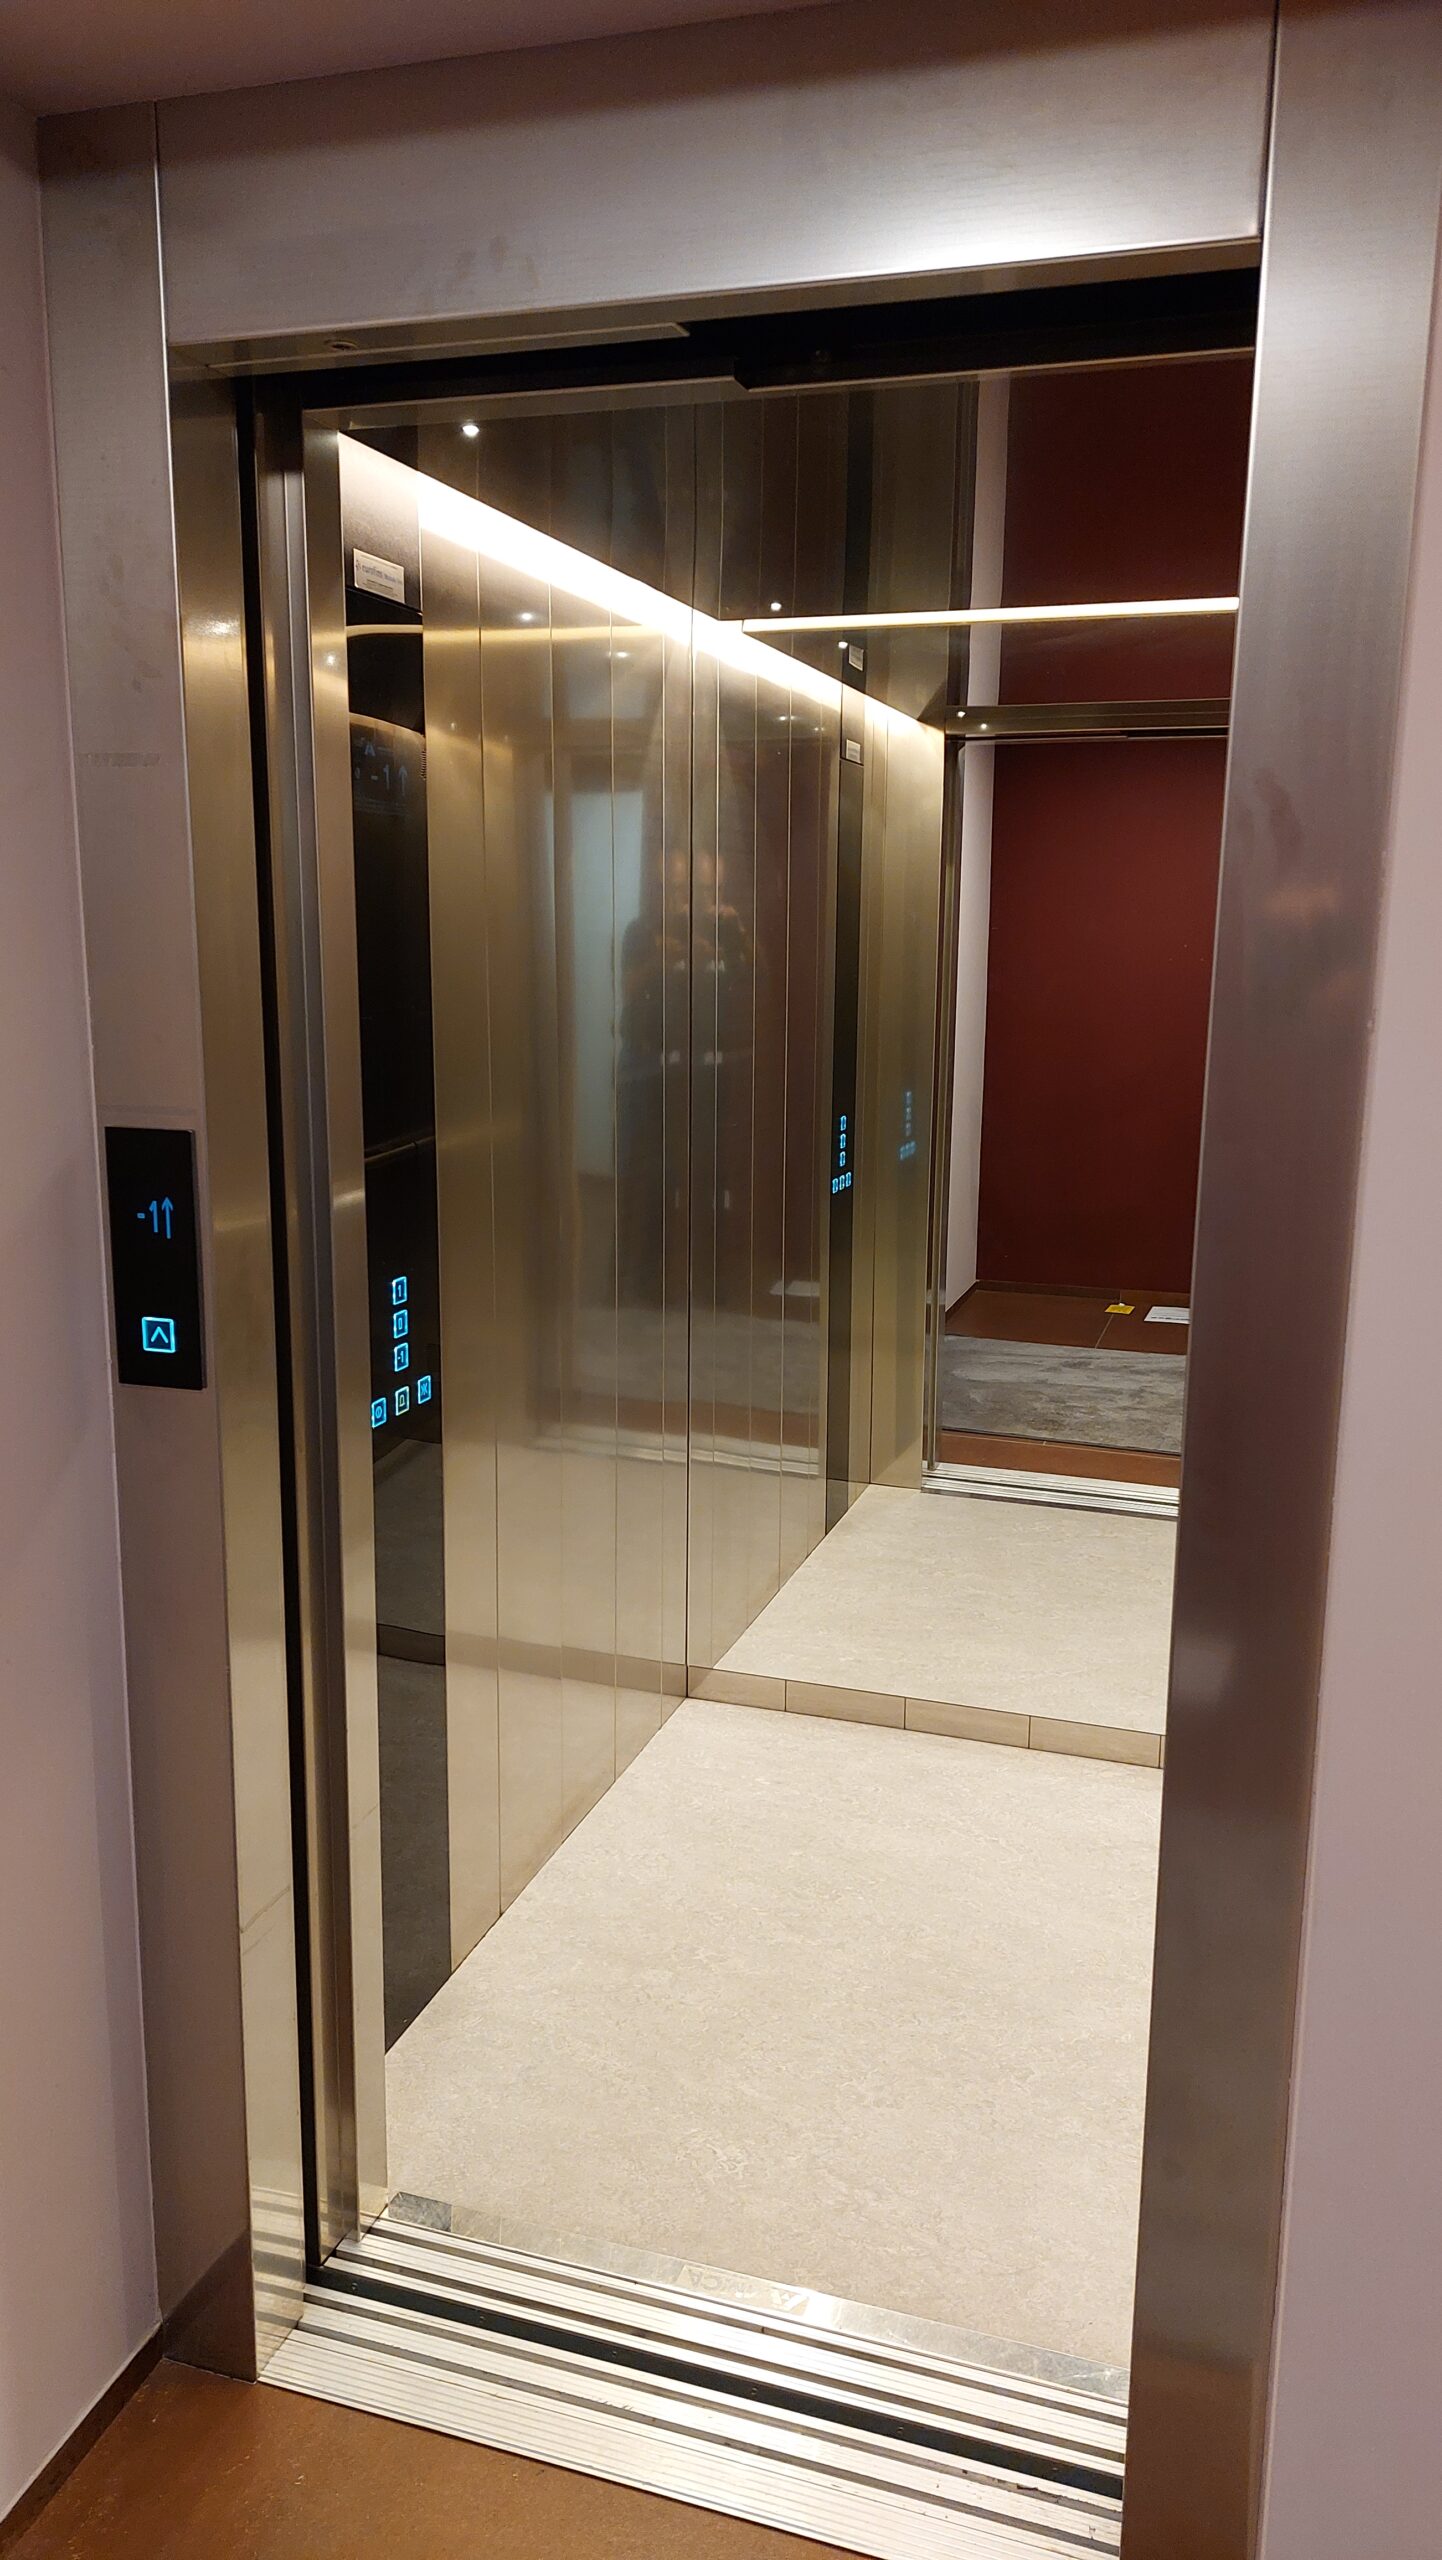 installazione ascensori varese